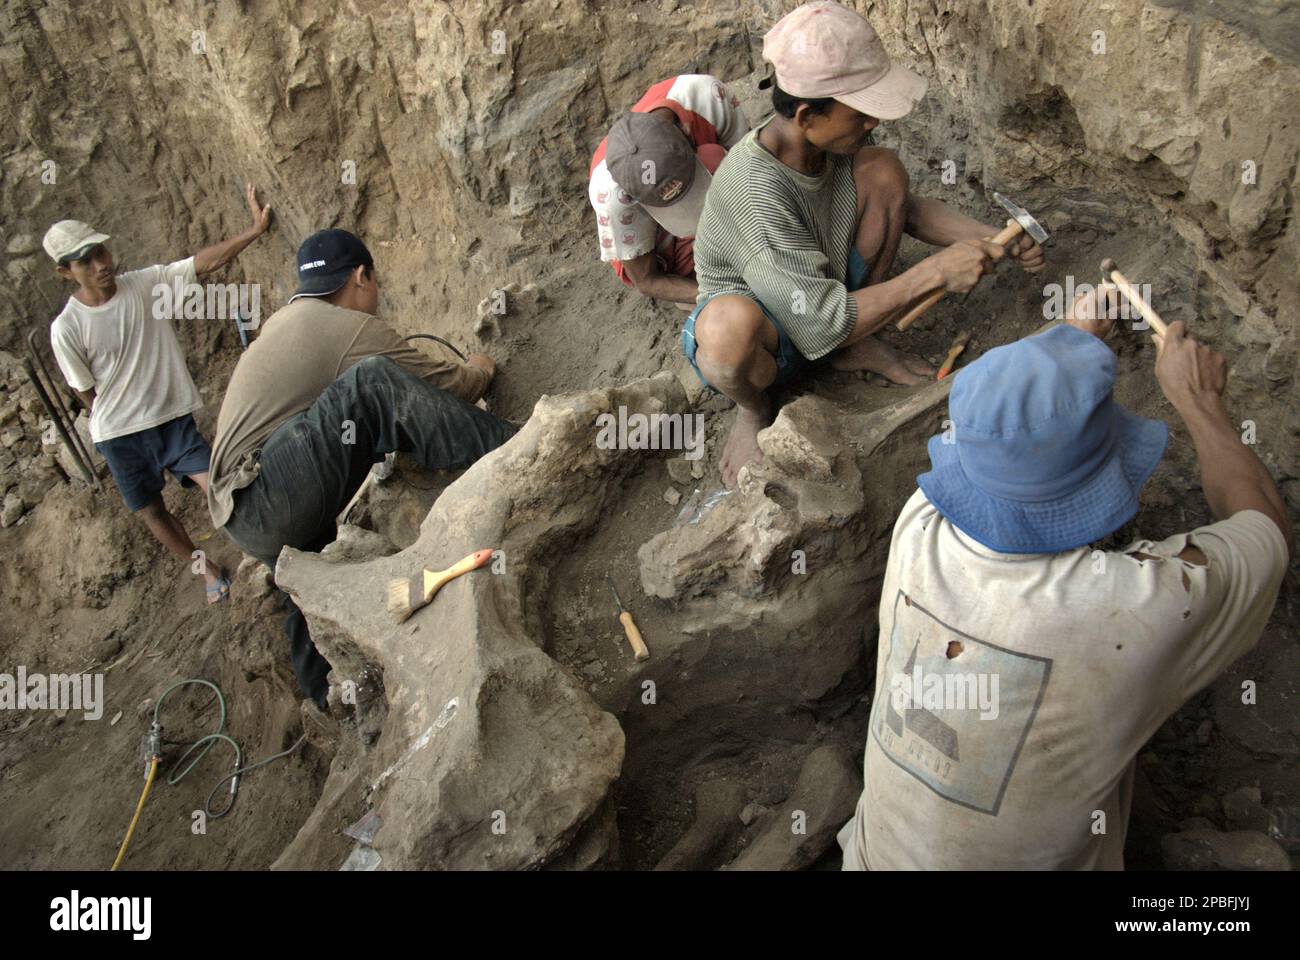 Un paleontólogo está trabajando con los aldeanos en la excavación de huesos fosilizados de una especie de elefante extinto identificada científicamente como Elephas hysudrindicus, o popularmente llamado 'elefante blora', en Sunggun, Mendalem, Kradenan, Blora, Java central, Indonesia. El equipo de científicos de Investigación de Vertebrados (Agencia Geológica, Ministerio de Energía y Recursos Minerales de Indonesia) dirigido por Iwan Kurniawan y Fachroel Aziz descubrió los huesos de la especie casi en su totalidad (alrededor del 90 por ciento completo) que más tarde les permitiría construir una reconstrucción científica, que se muestra en Geología... Foto de stock